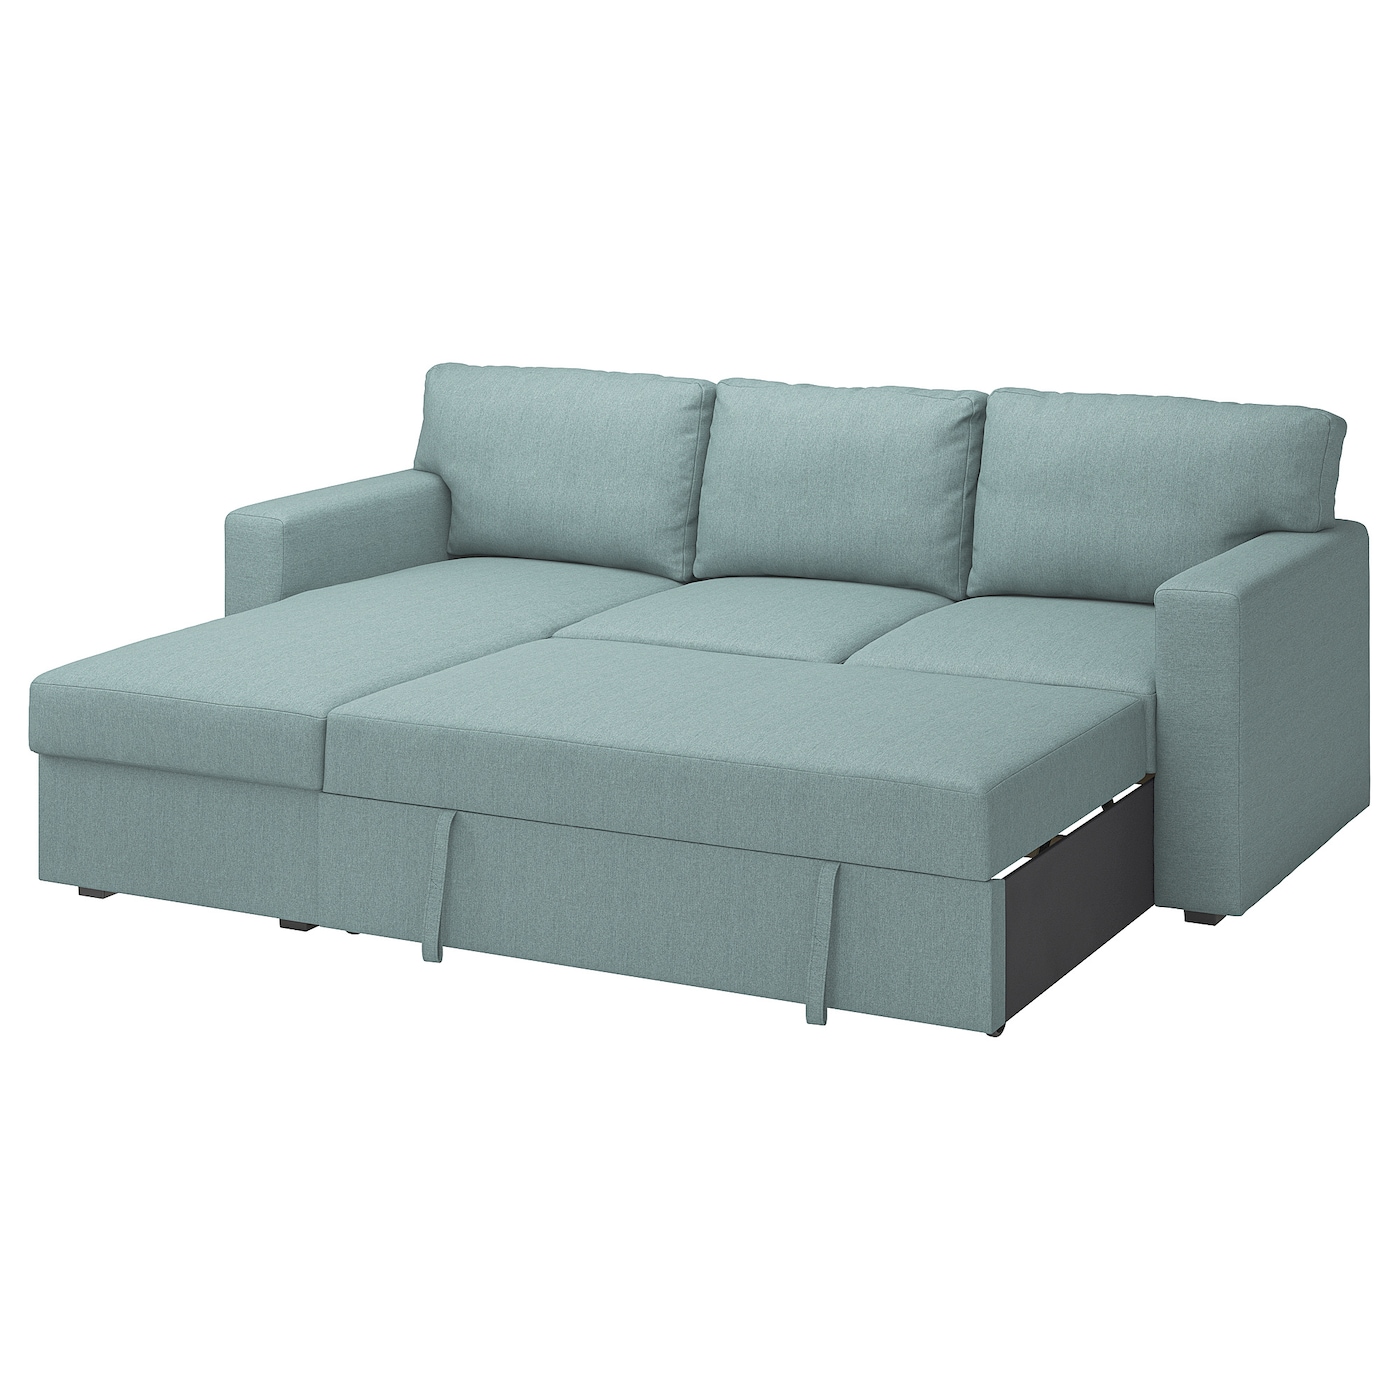 БОРСЛОВ 3-местный диван-кровать + диван, Тибблби светло-серый бирюзовый BÅRSLÖV IKEA диван кровать балу gray